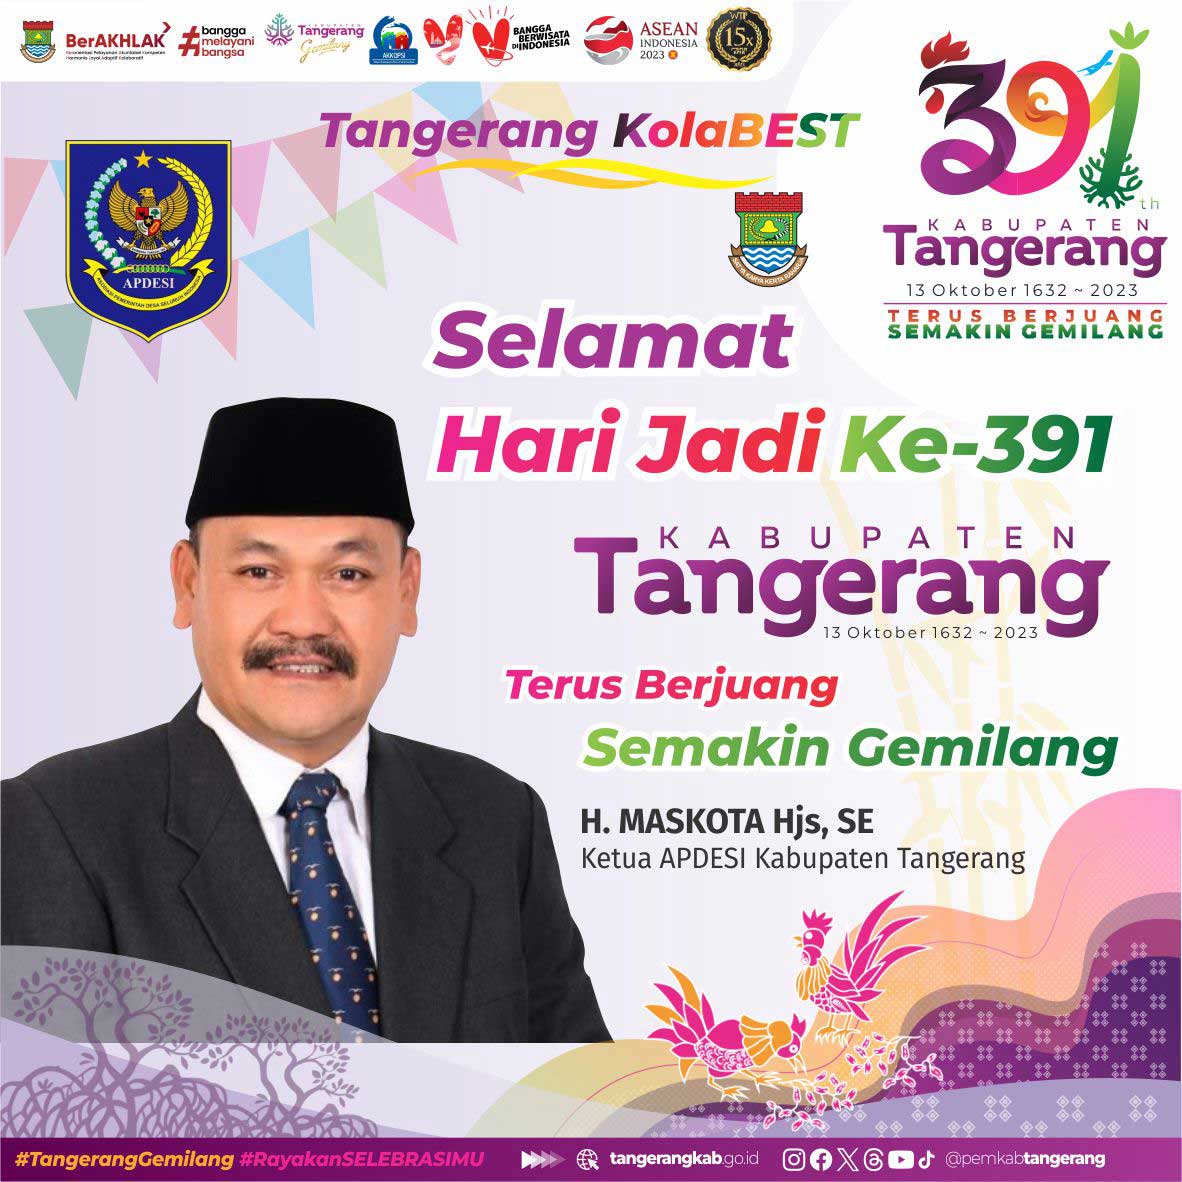 IKlan HUT Kabupaten Tangerang 2023 APDESI